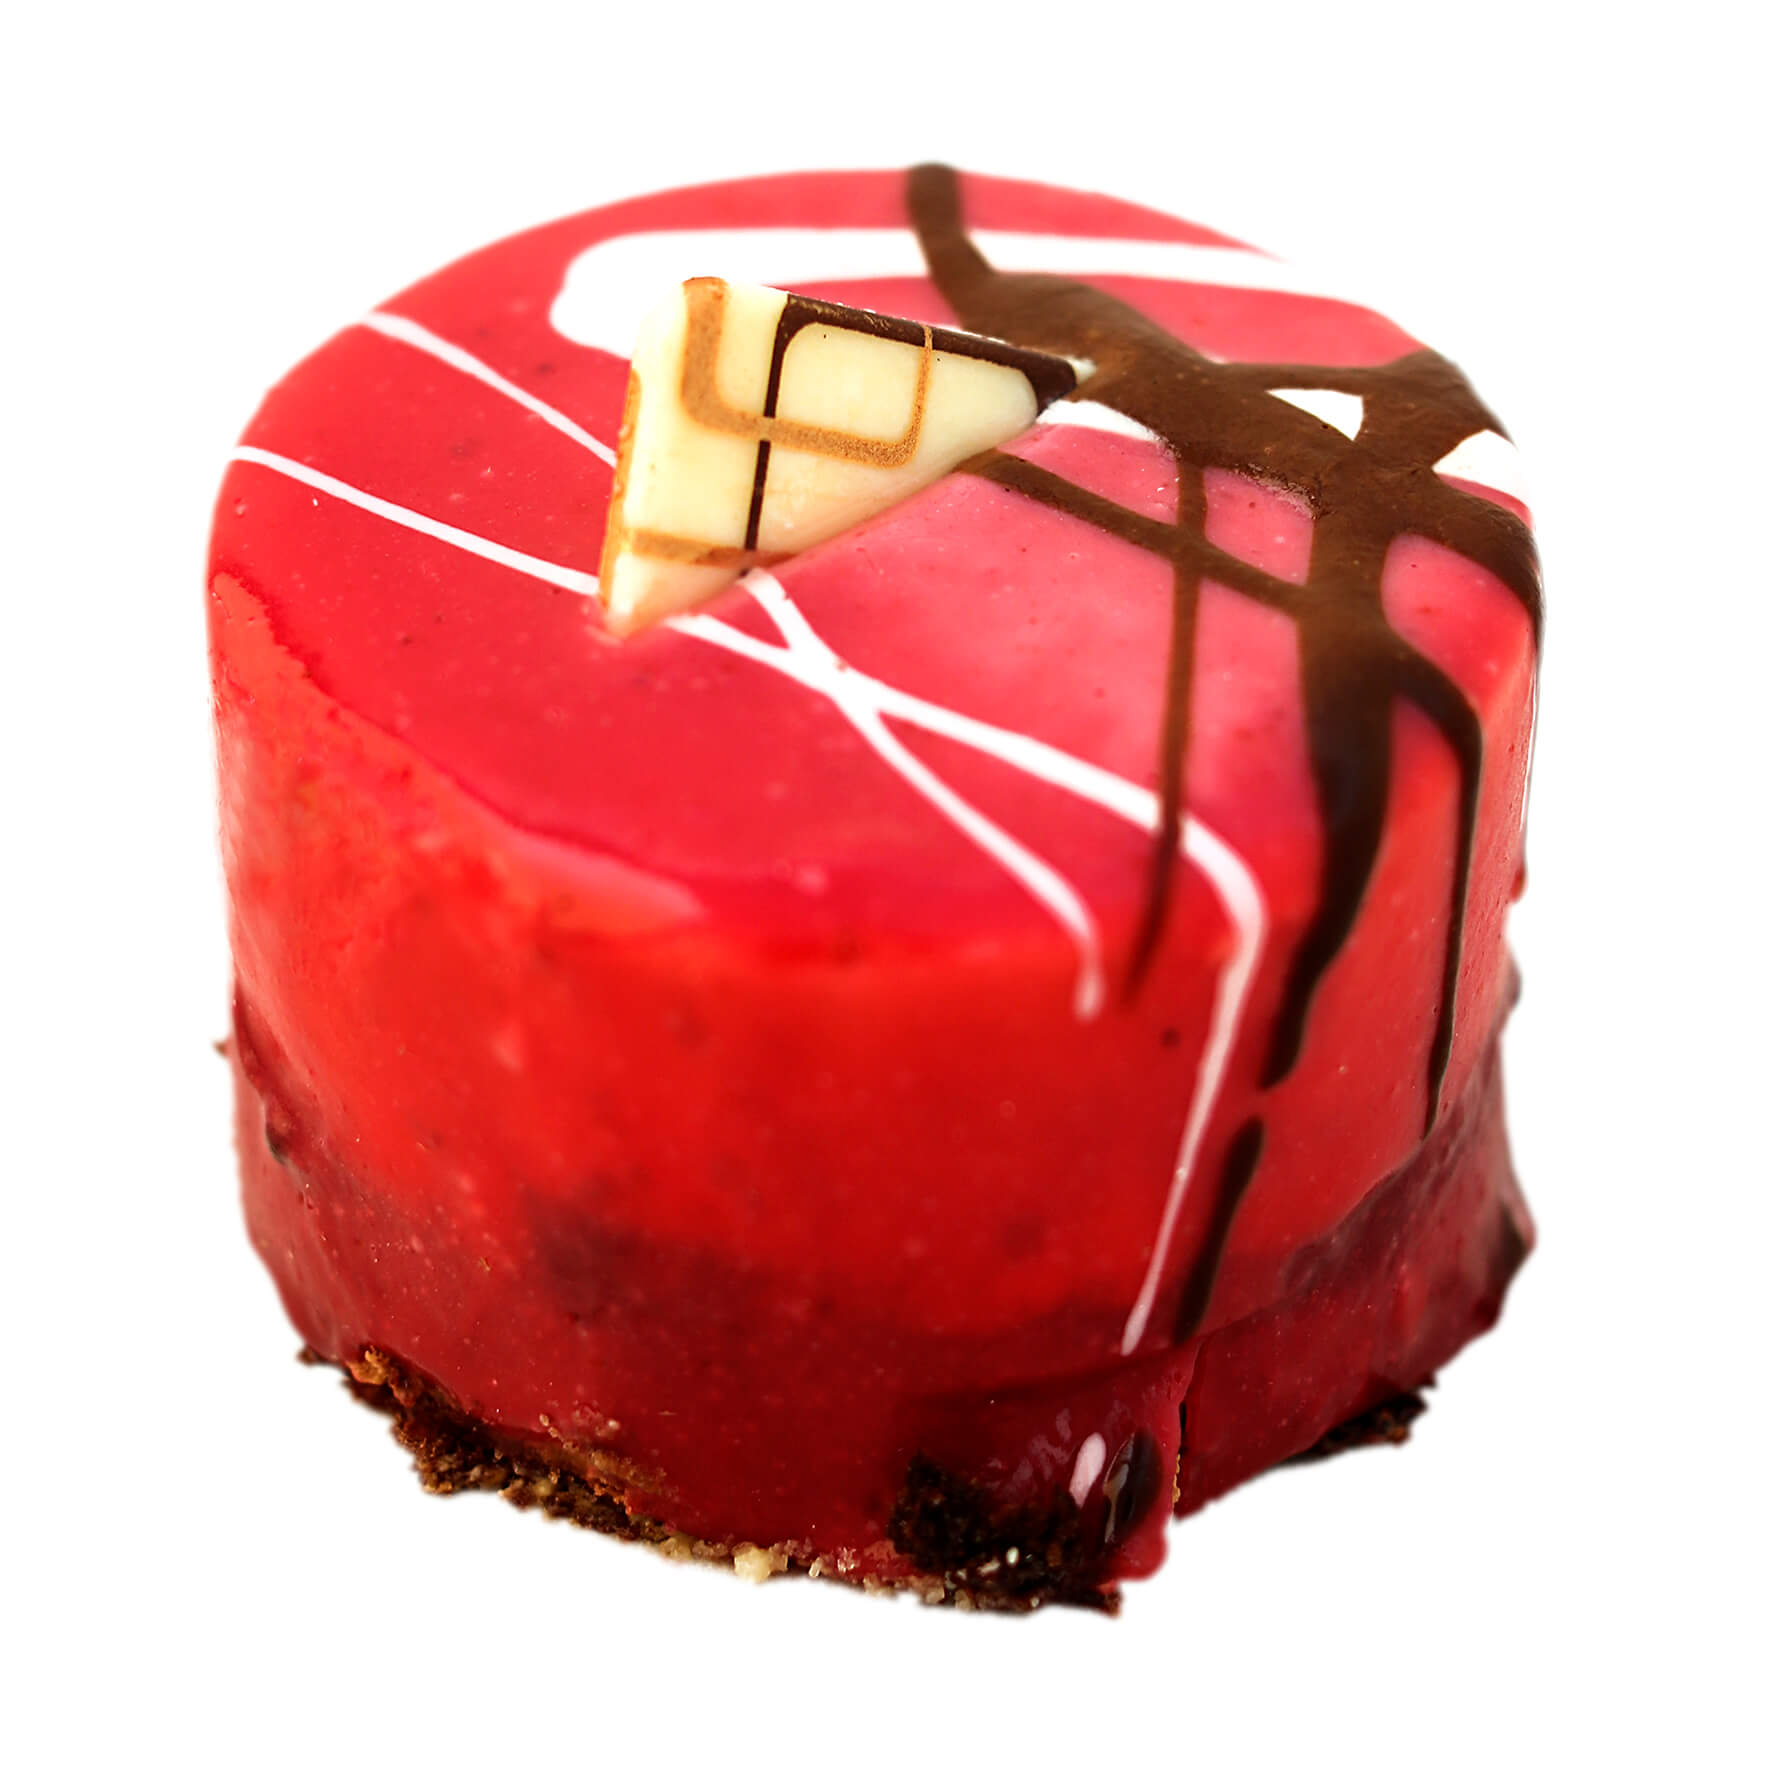 Strawberry Cake (piece)